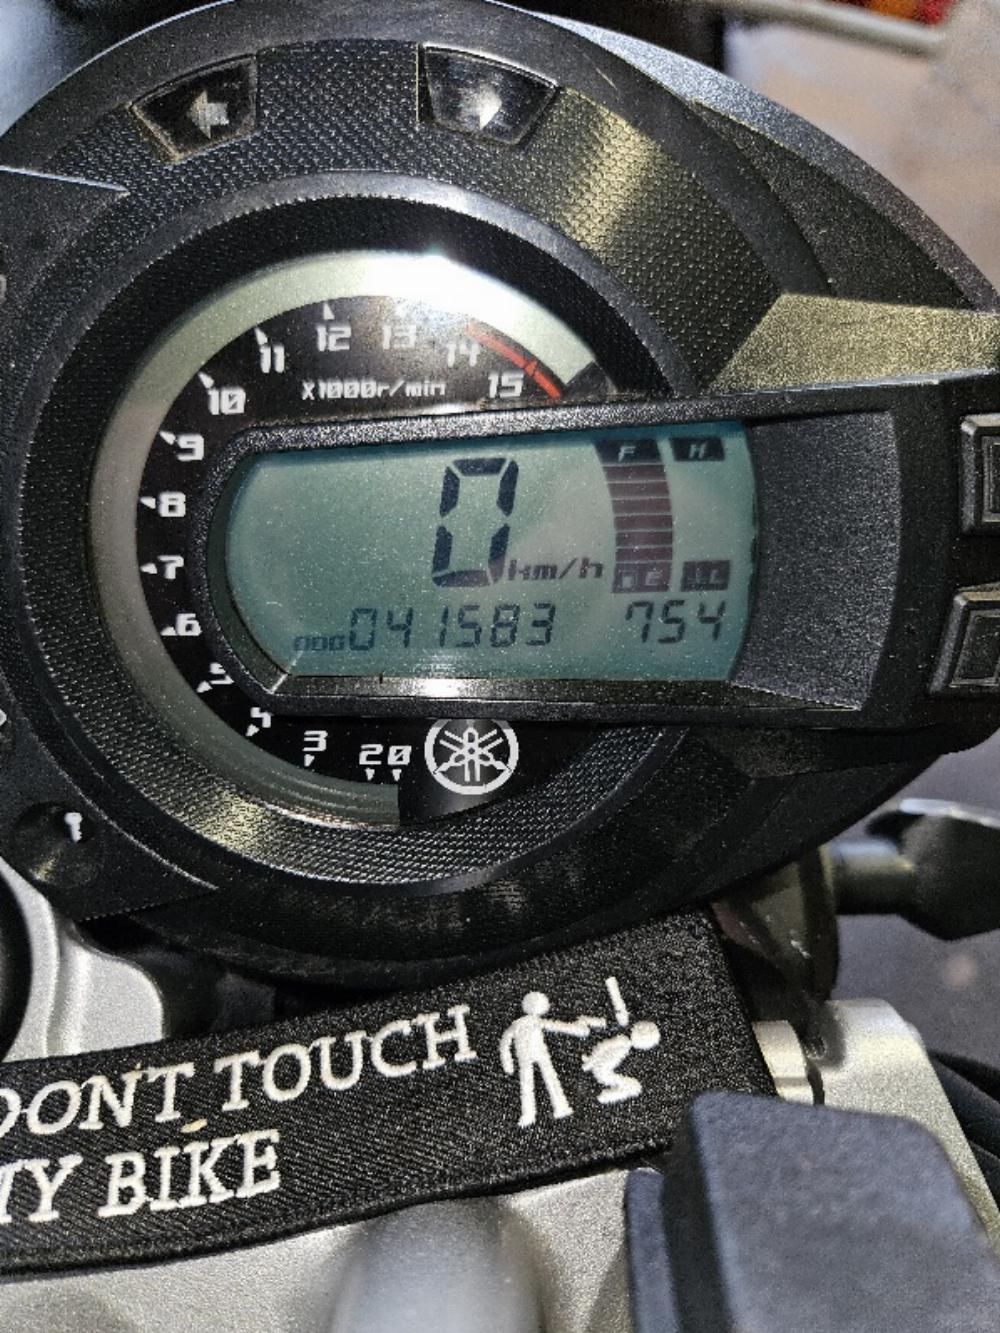 Motorrad verkaufen Yamaha Fz6 Ankauf